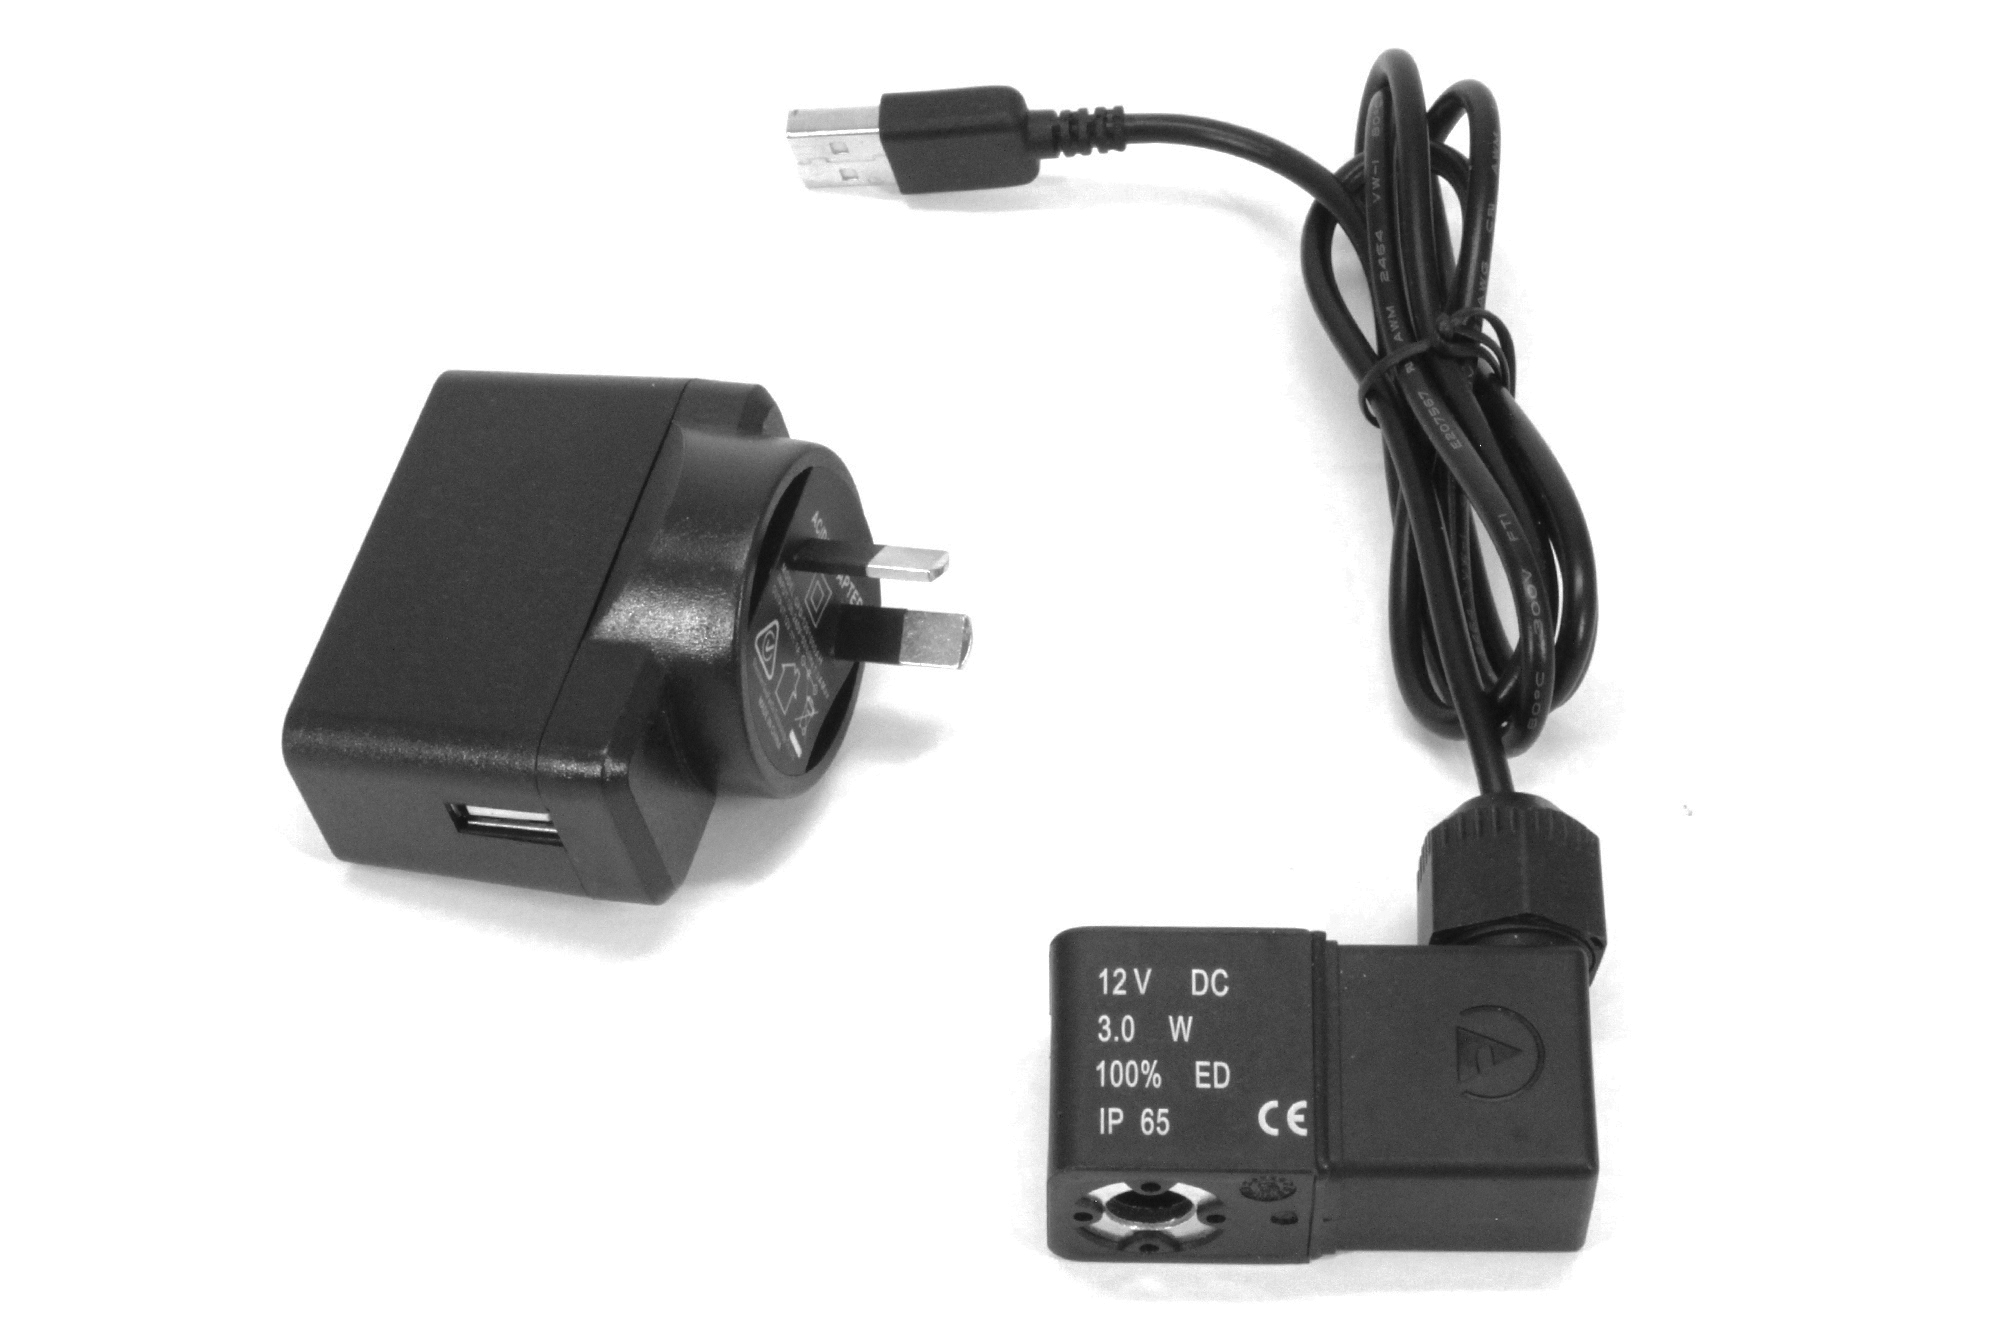 12v DC USB-magnetventil och transformator i Australien och Nya Zeeland